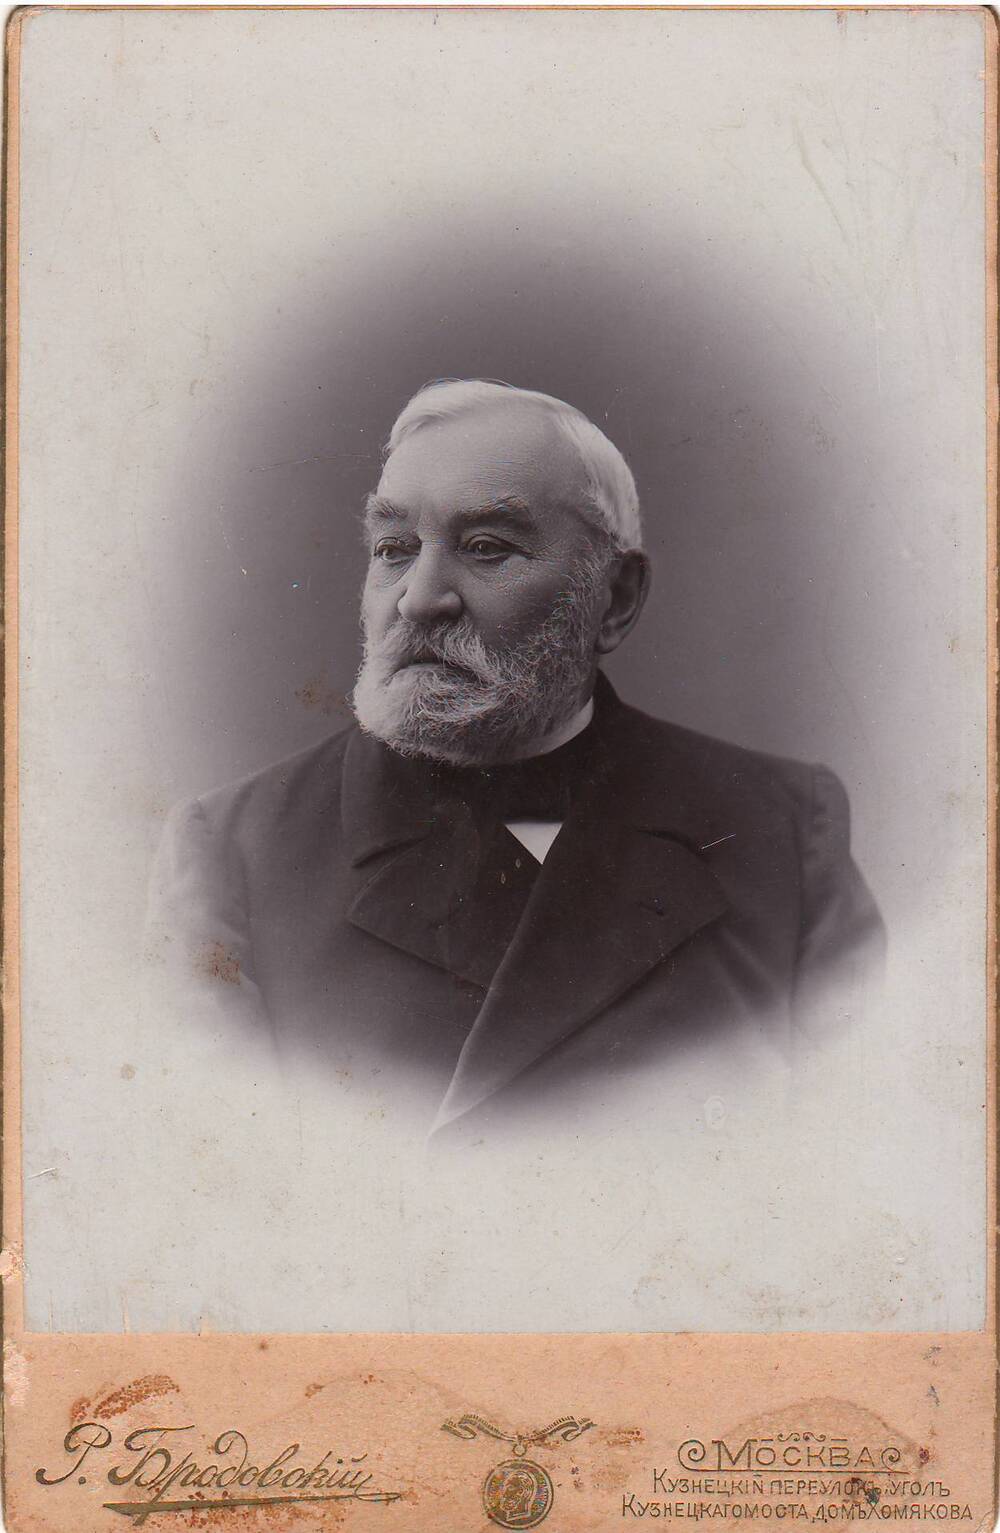 Фотопортрет Путята Дмитрия Александровича (1817-1908г.г.).